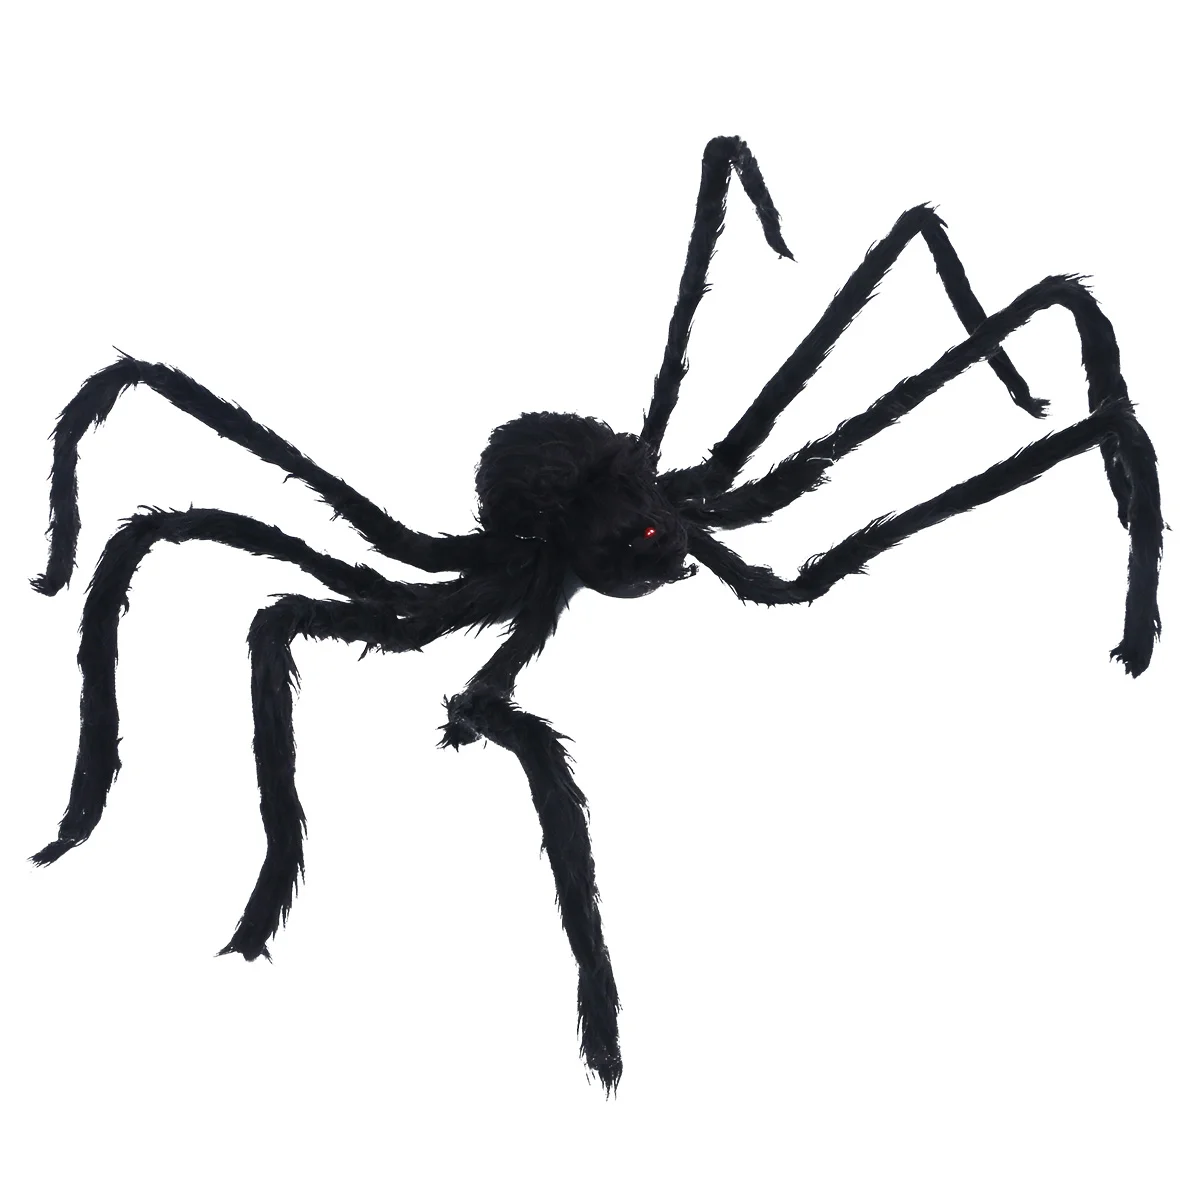 

Искусственный паук, искусственный паук для внутреннего и наружного декора, искусственный крик